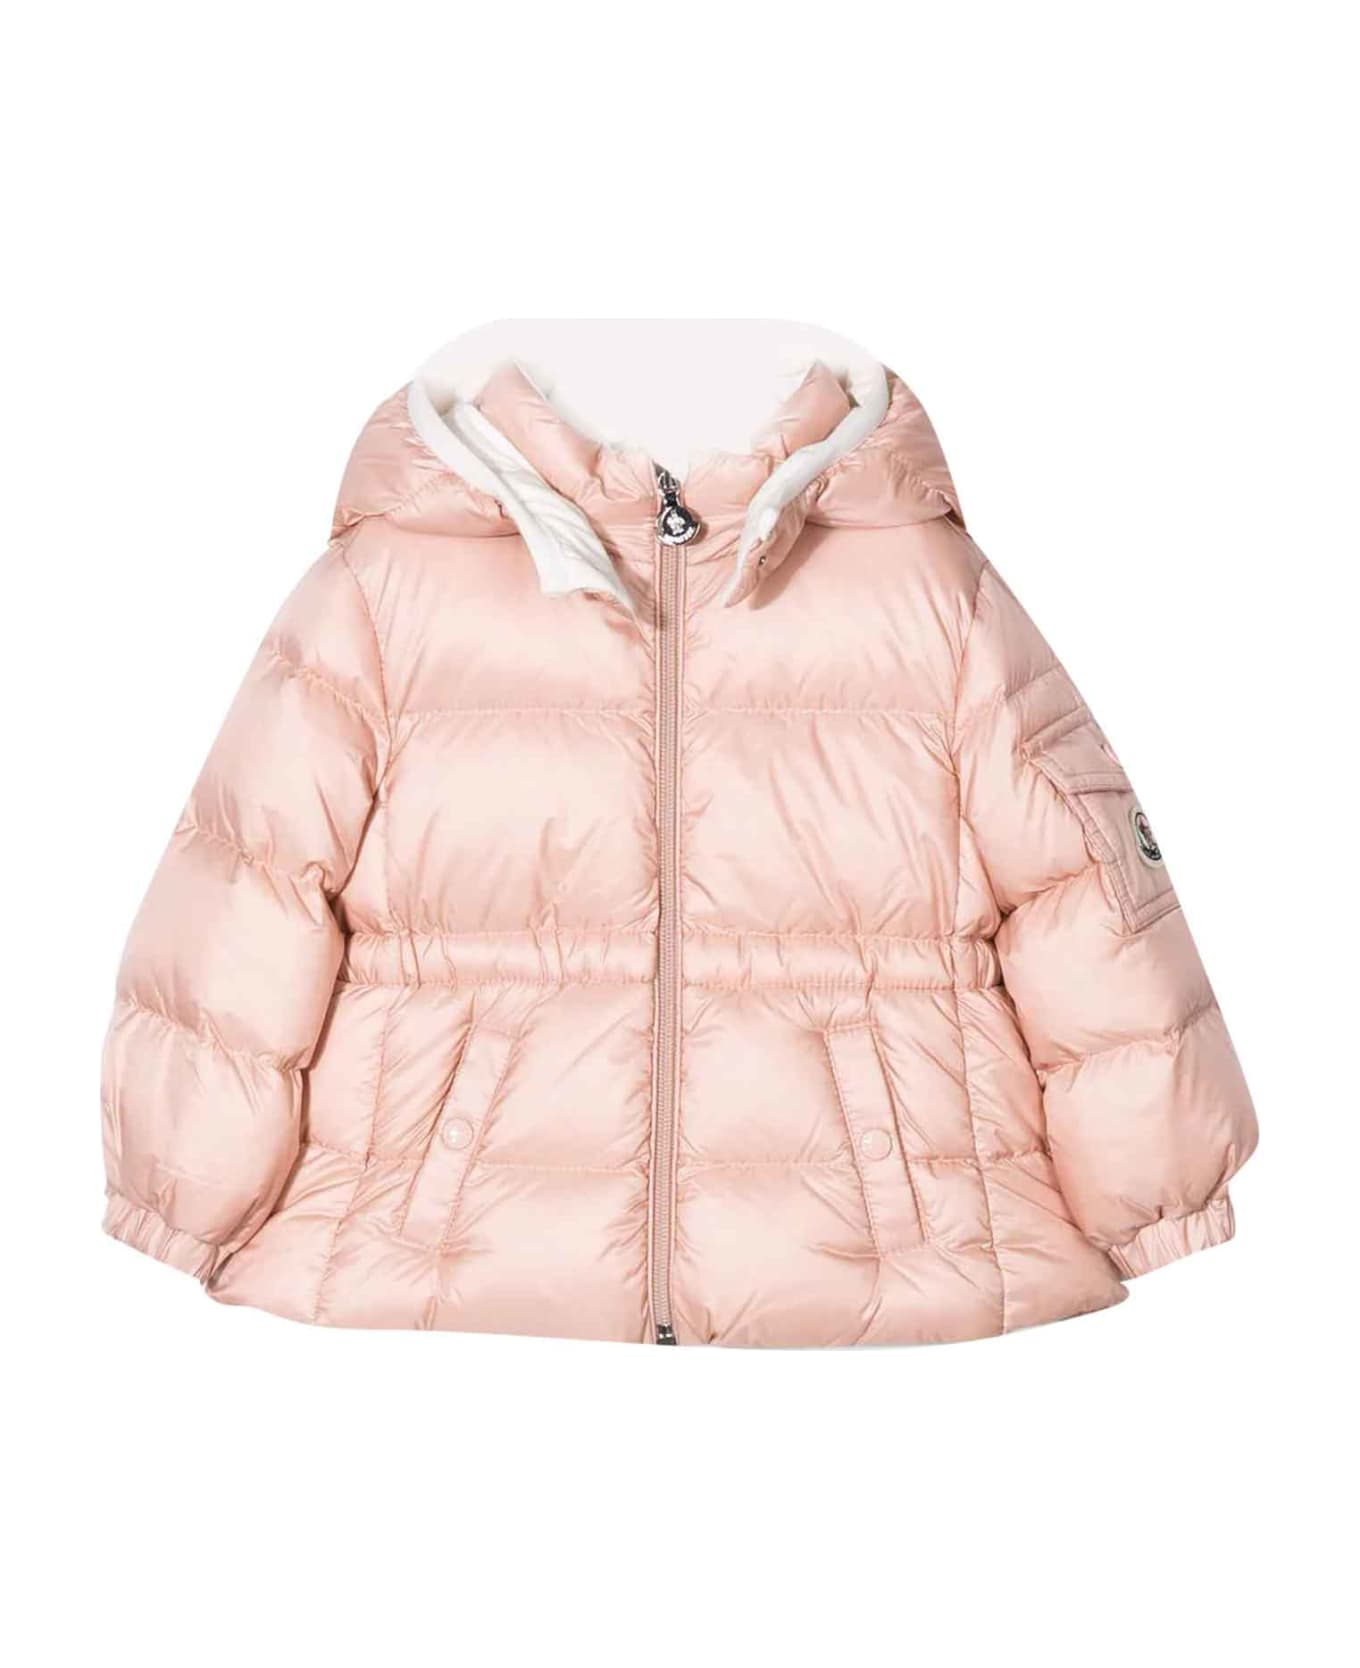 Moncler Pink Jacket Baby Unisex - Rosa